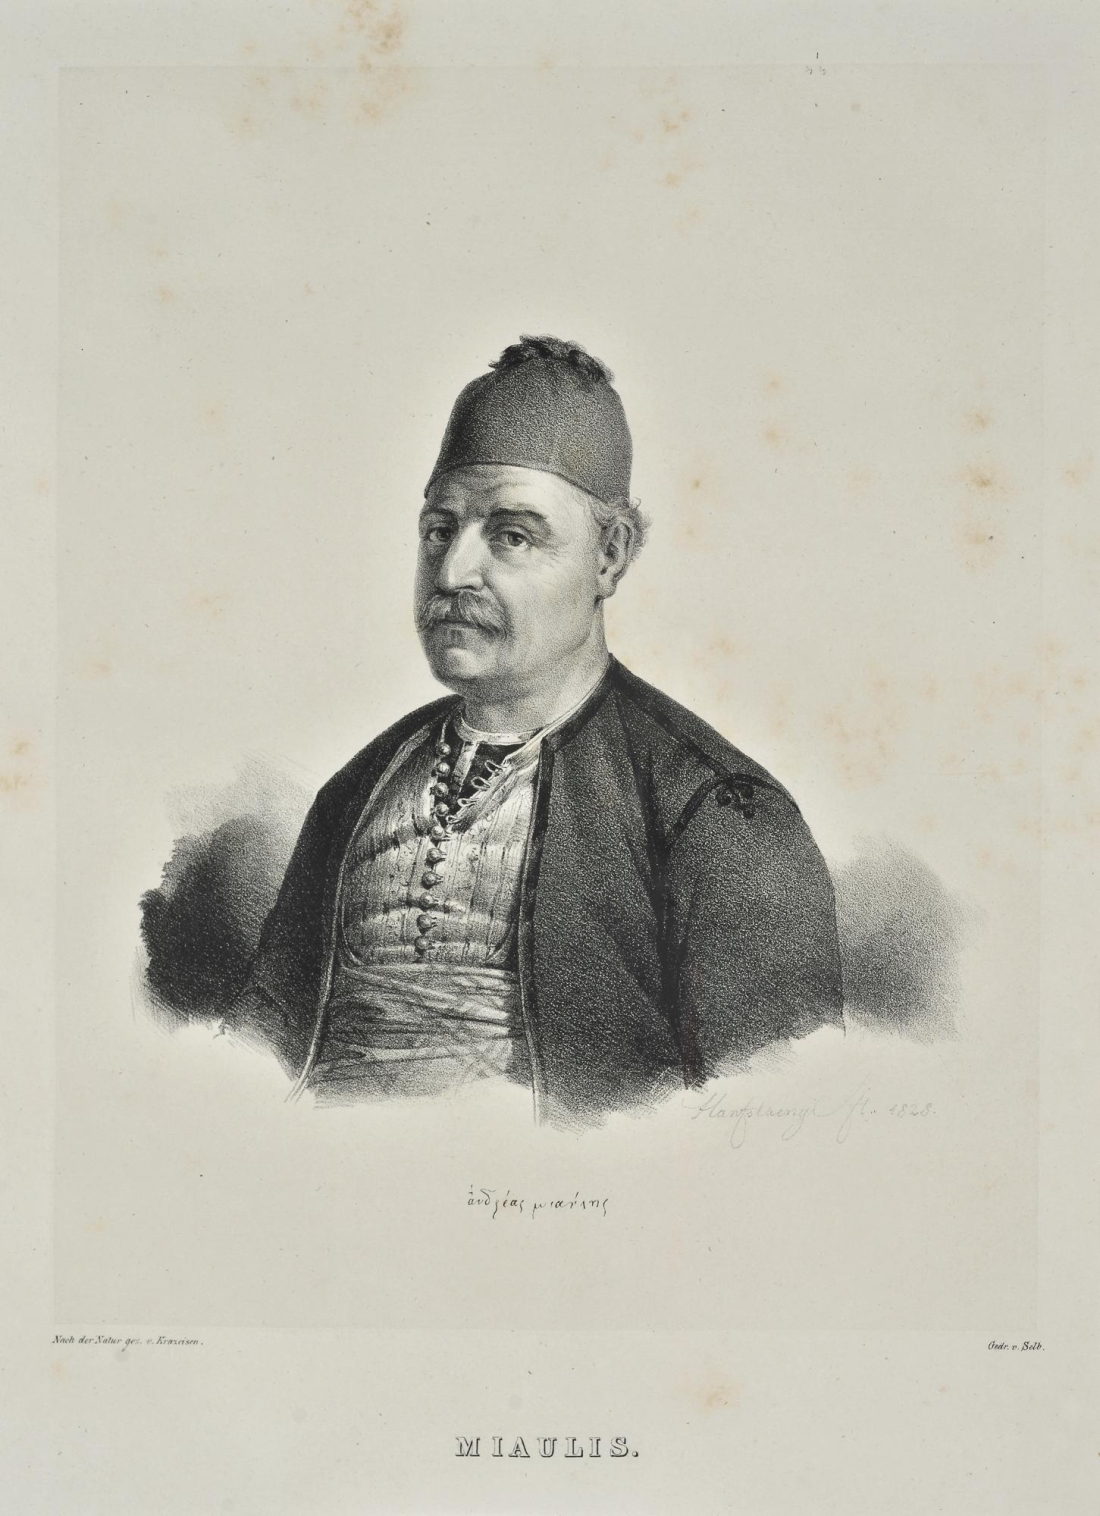 Ο Ανδρέας Μιαούλης, ψευδώνυμο του Ανδρέα Βώκου (1769-1835), σε λιθογραφία του Καρλ Κρατσάιζεν.  